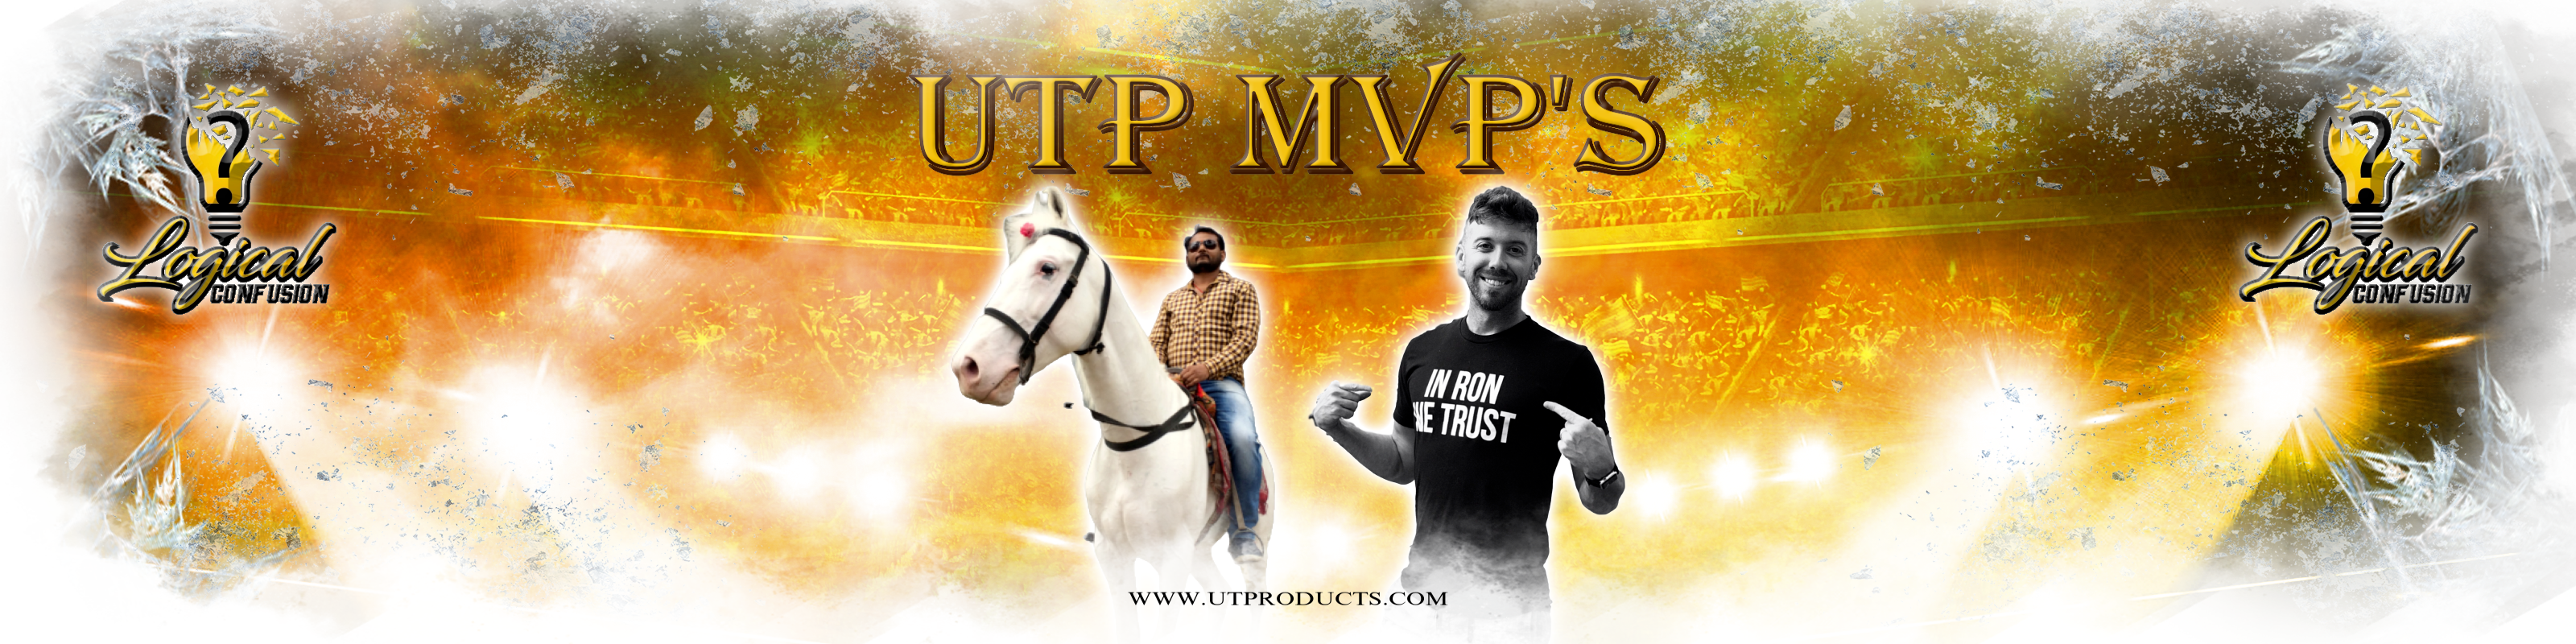 UTP MVP Team Poster